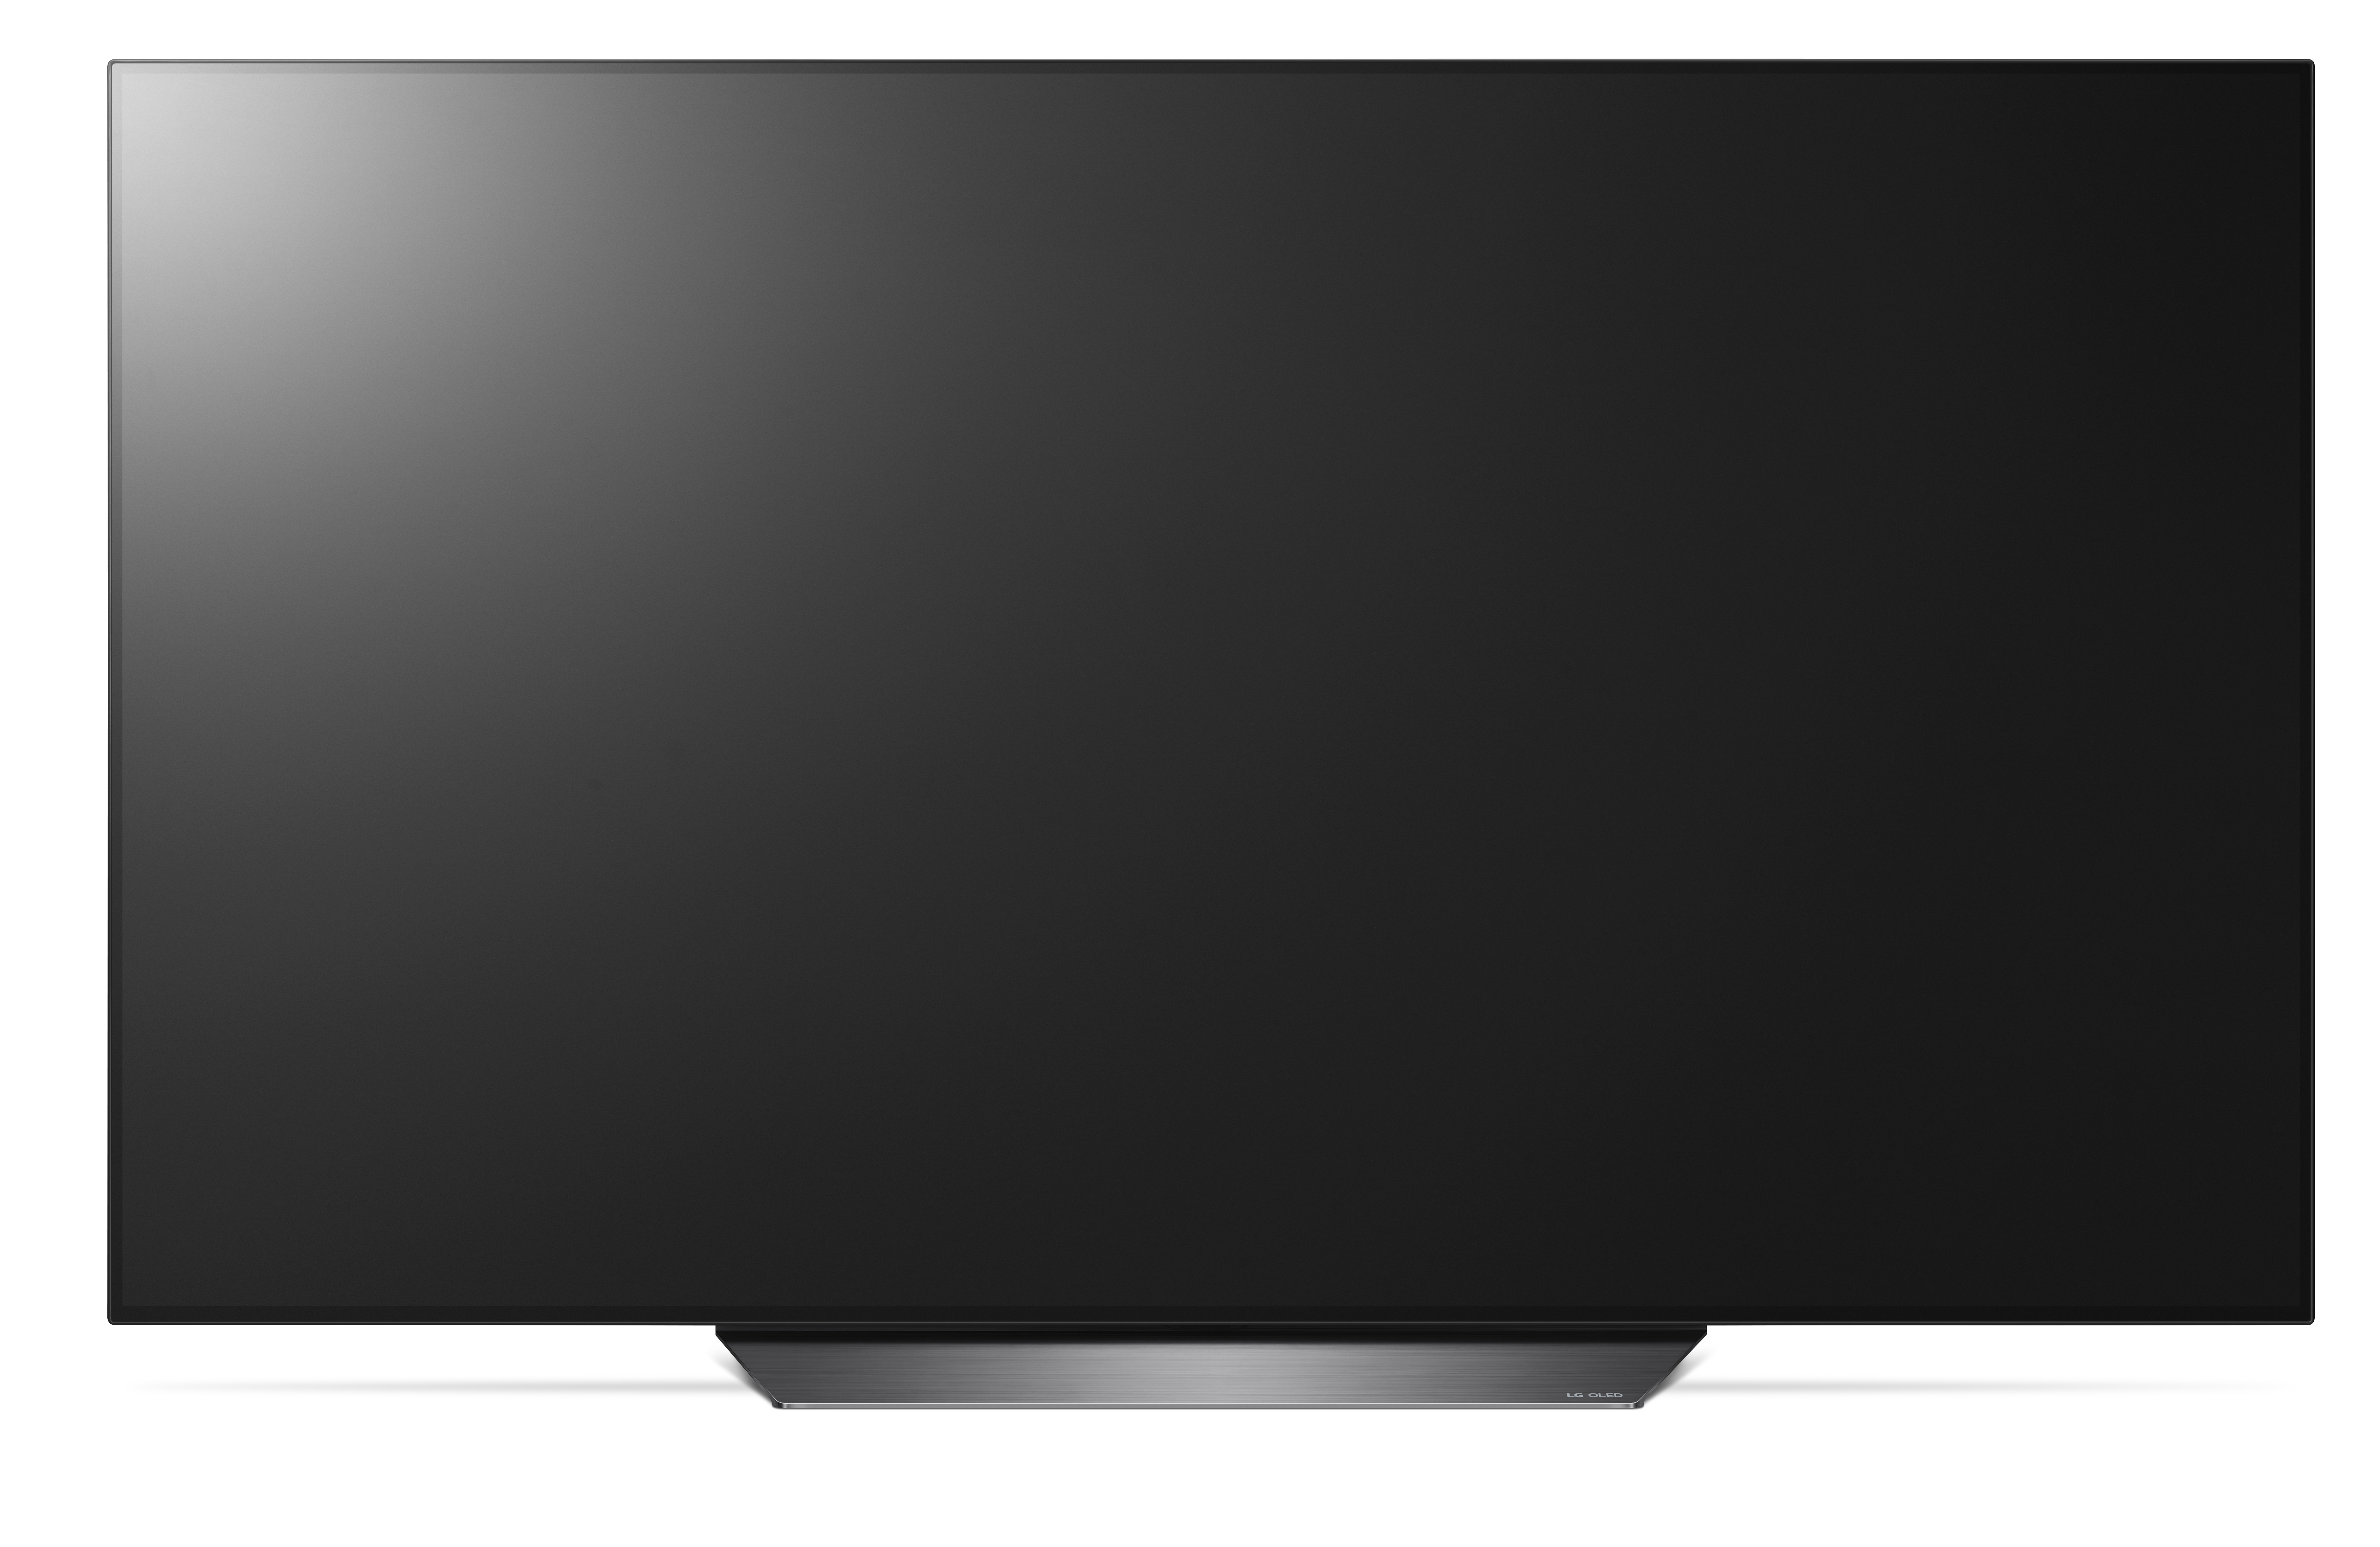 LG OLED55B8PLA TV